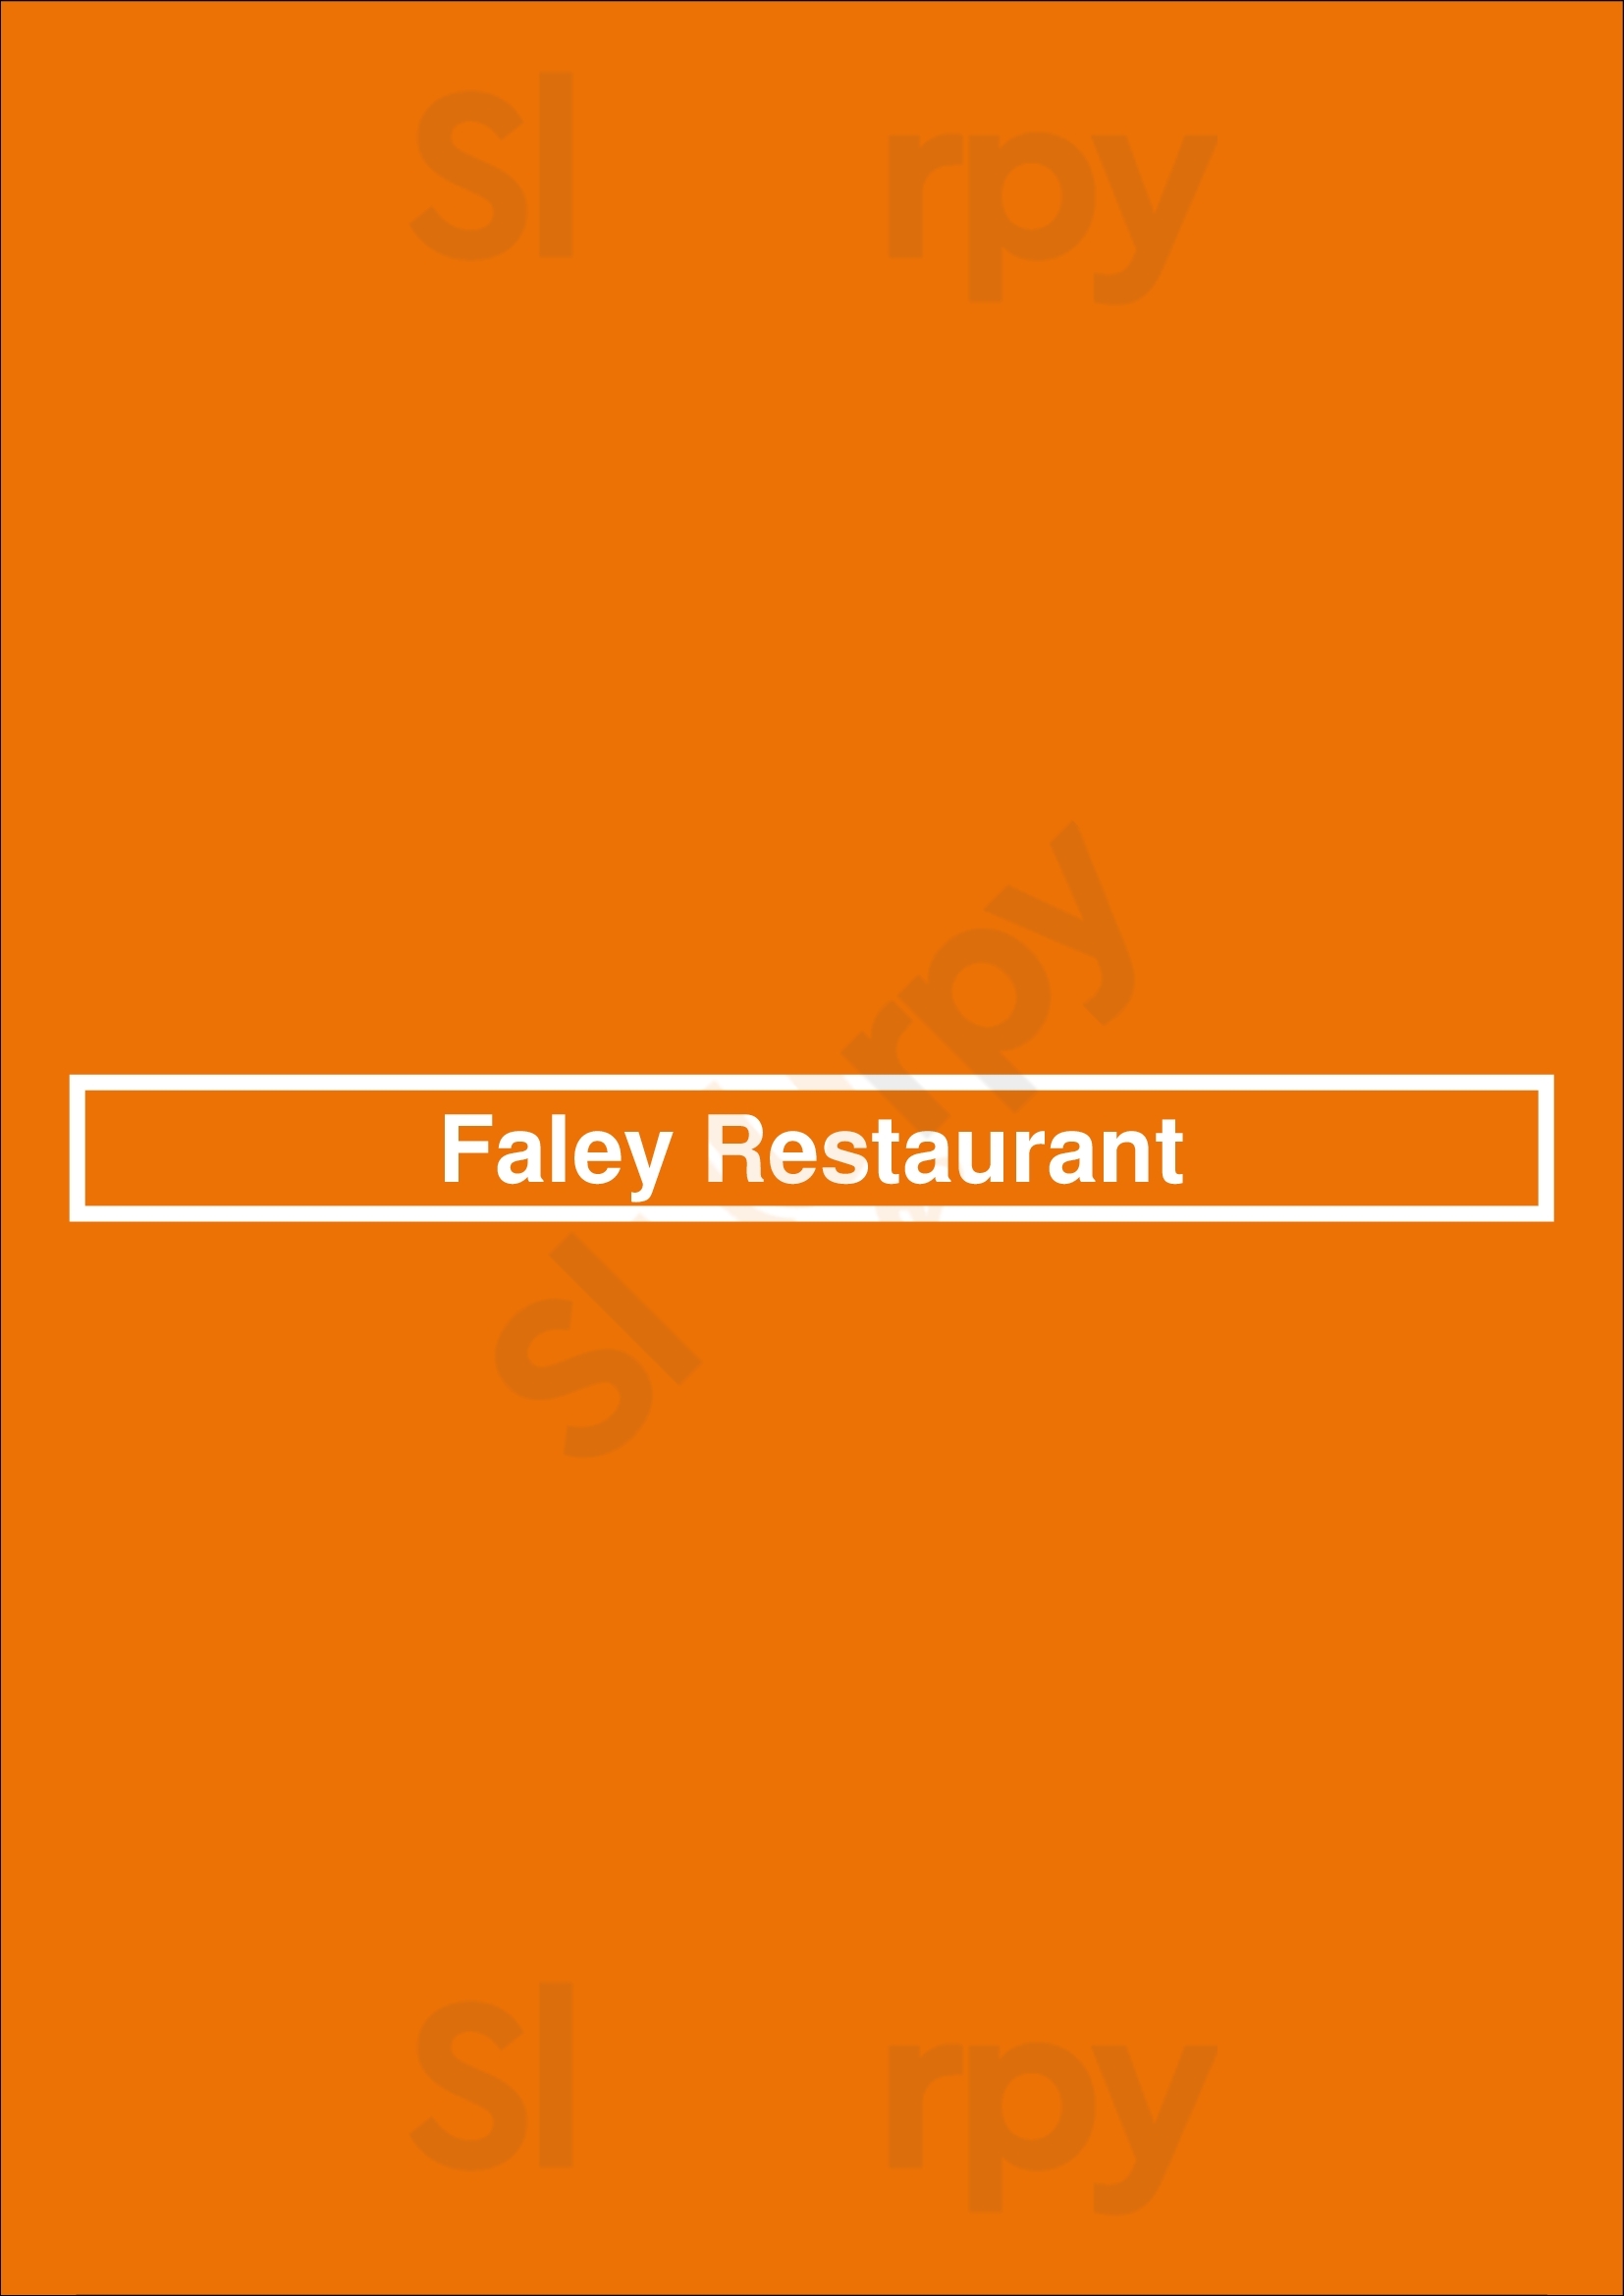 Faley Restaurant Toronto Menu - 1